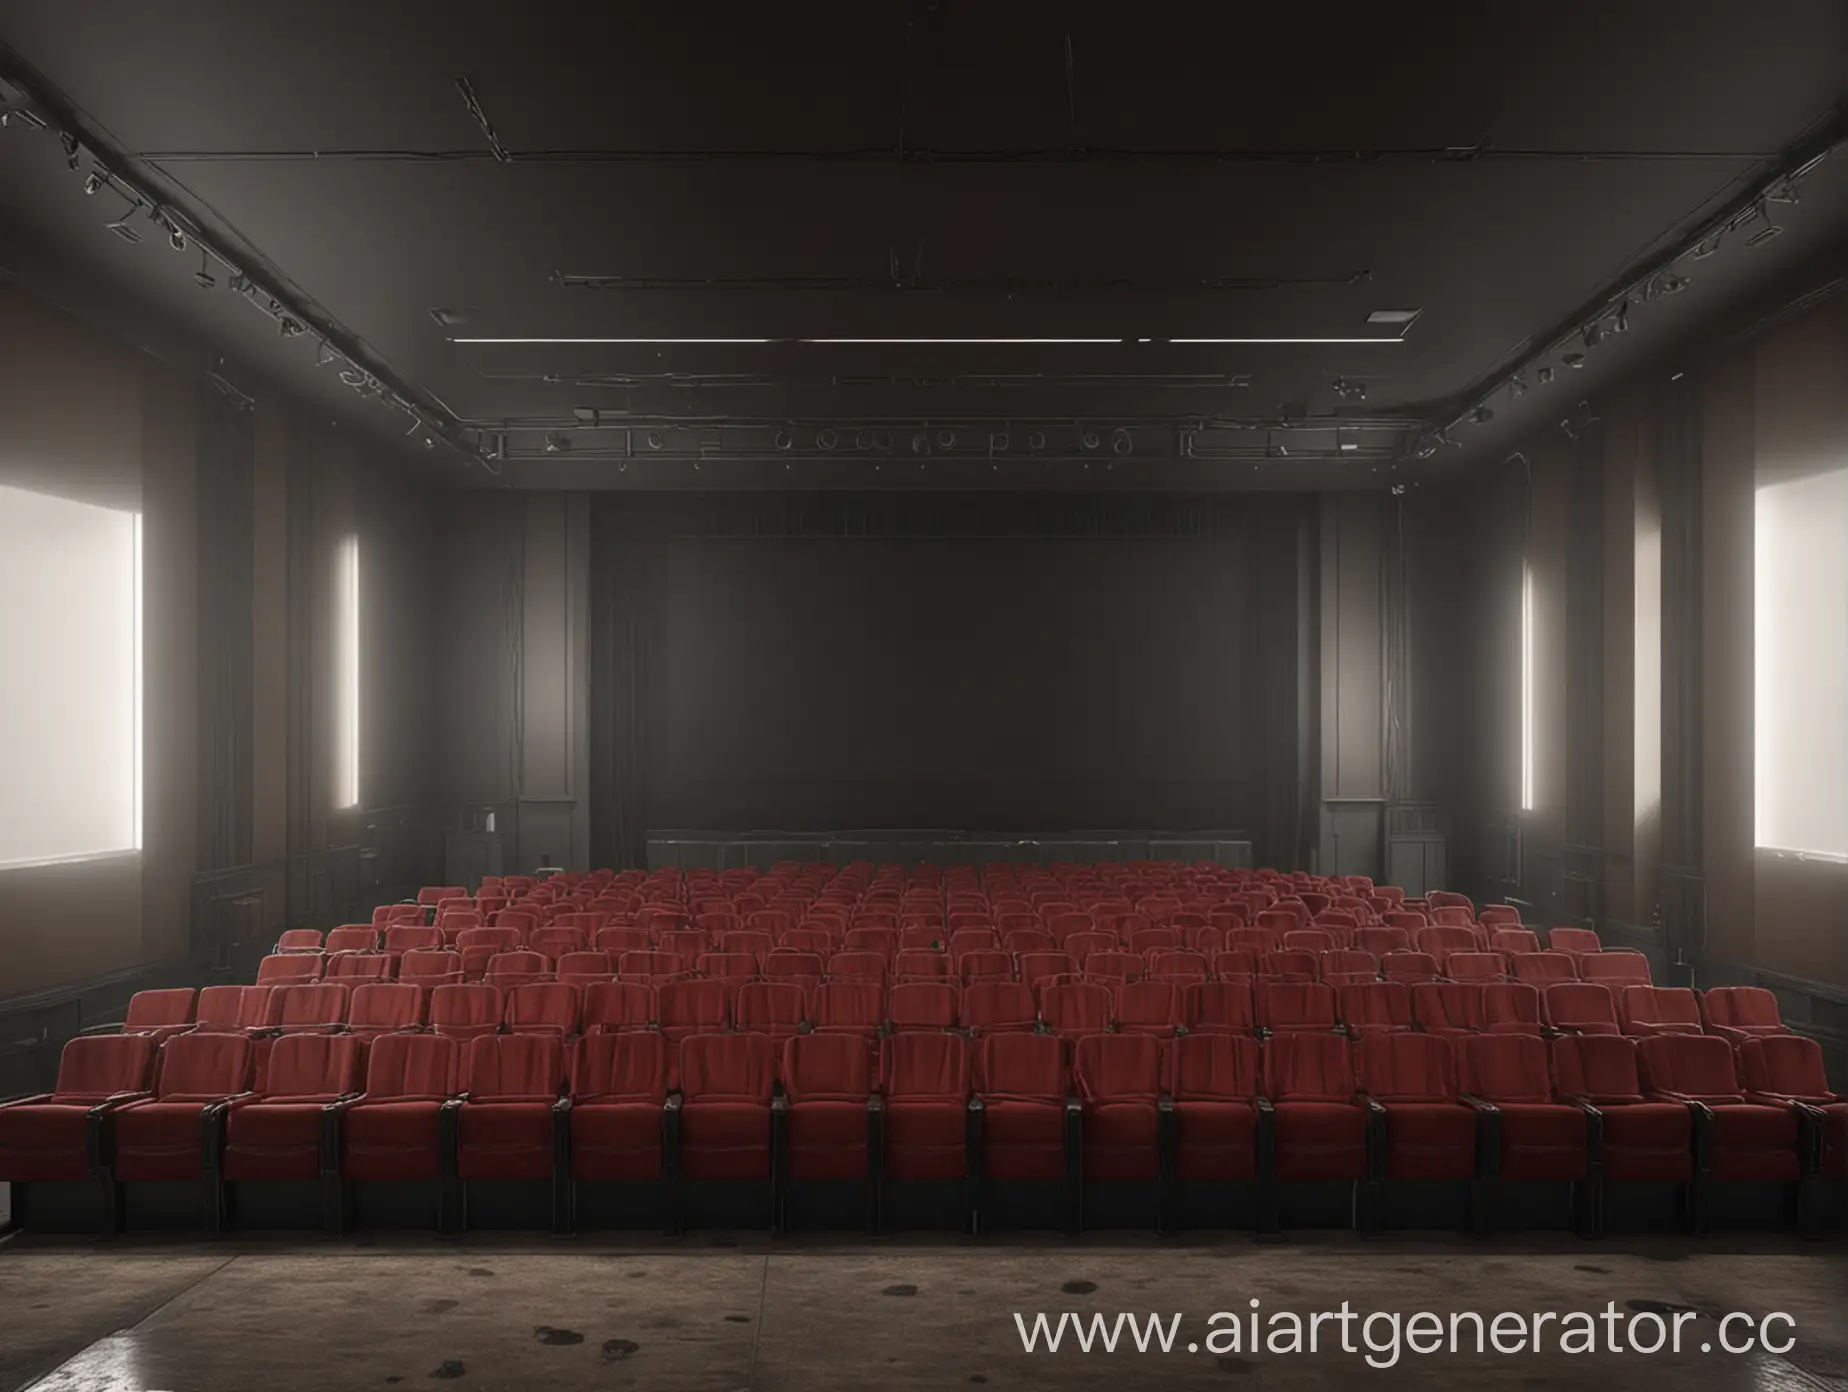 Cinema-HalfEmpty-Frontal-View-Photorealistic-4K